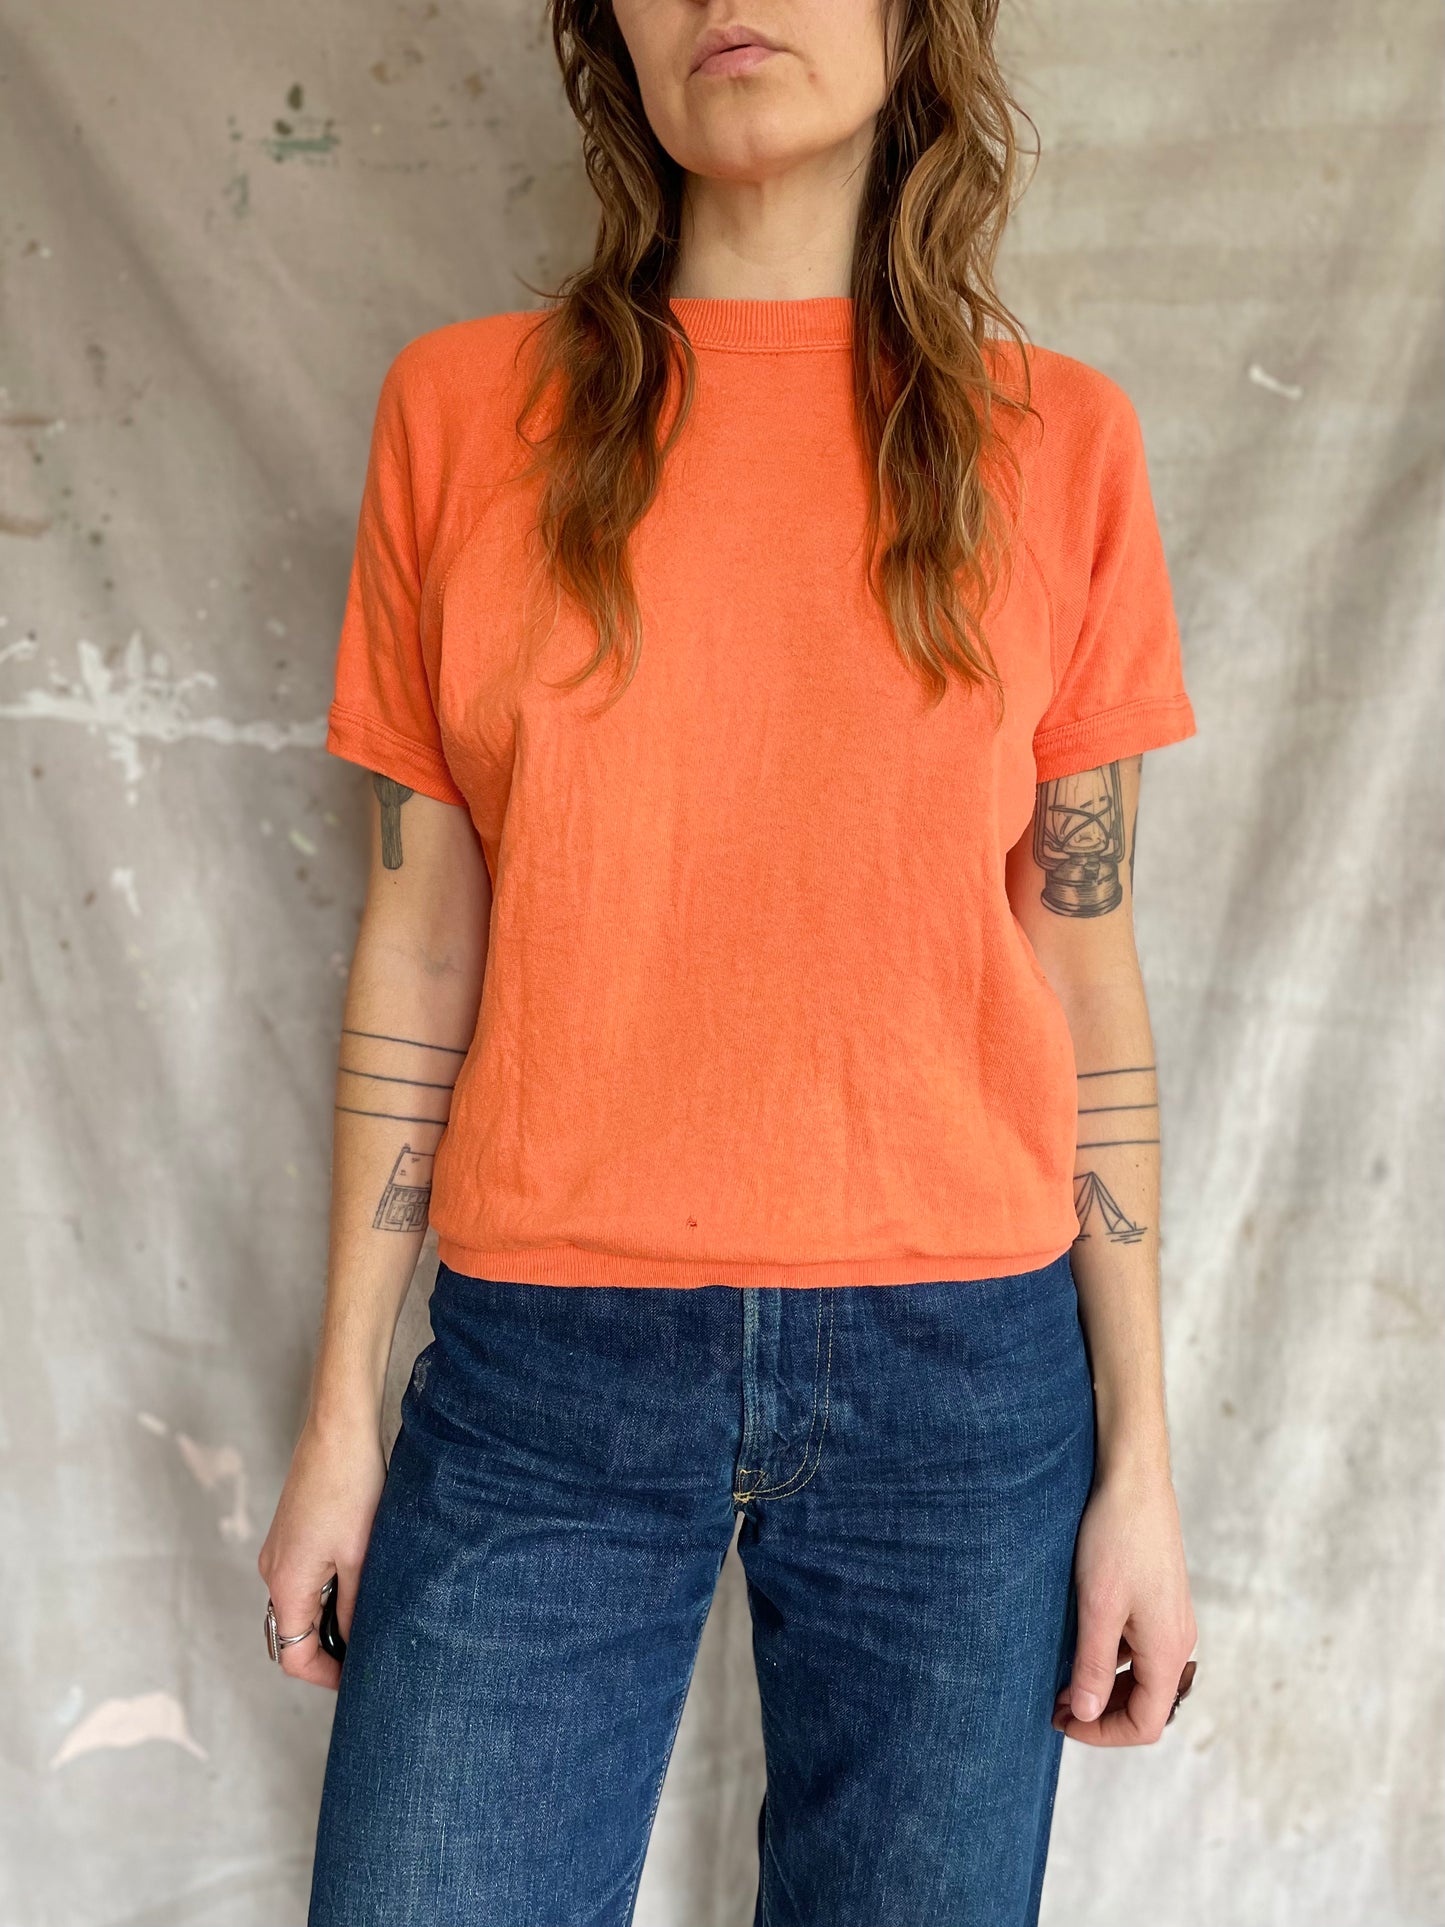 70s/80s Orange Short Sleeve Sweatshirt